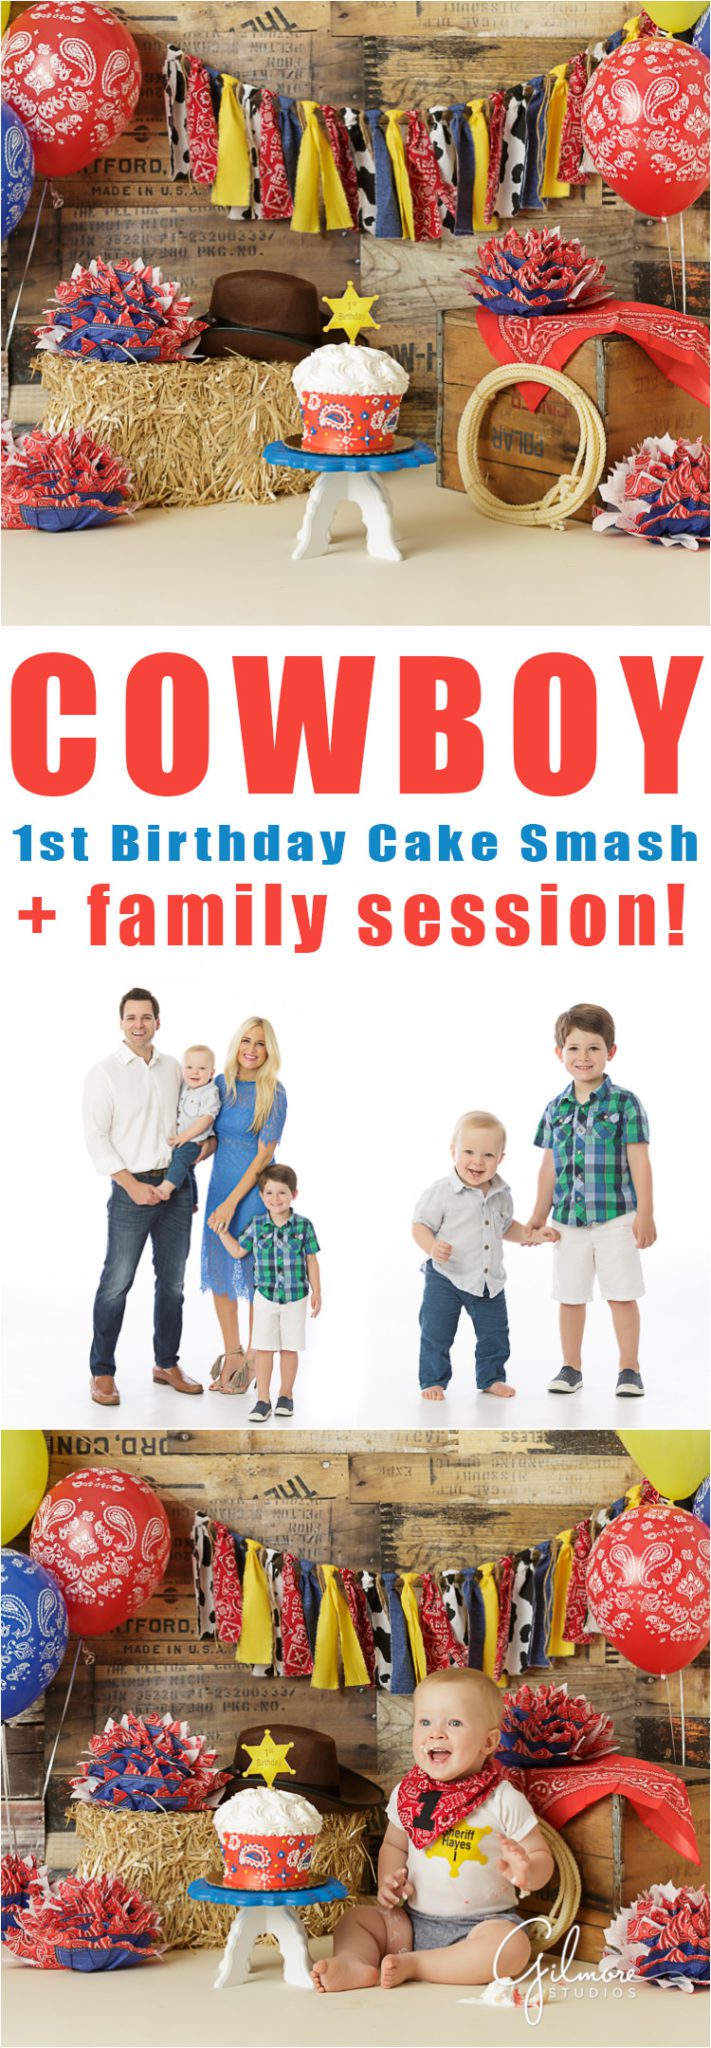 Cowboy theme 1st birthday cake smash